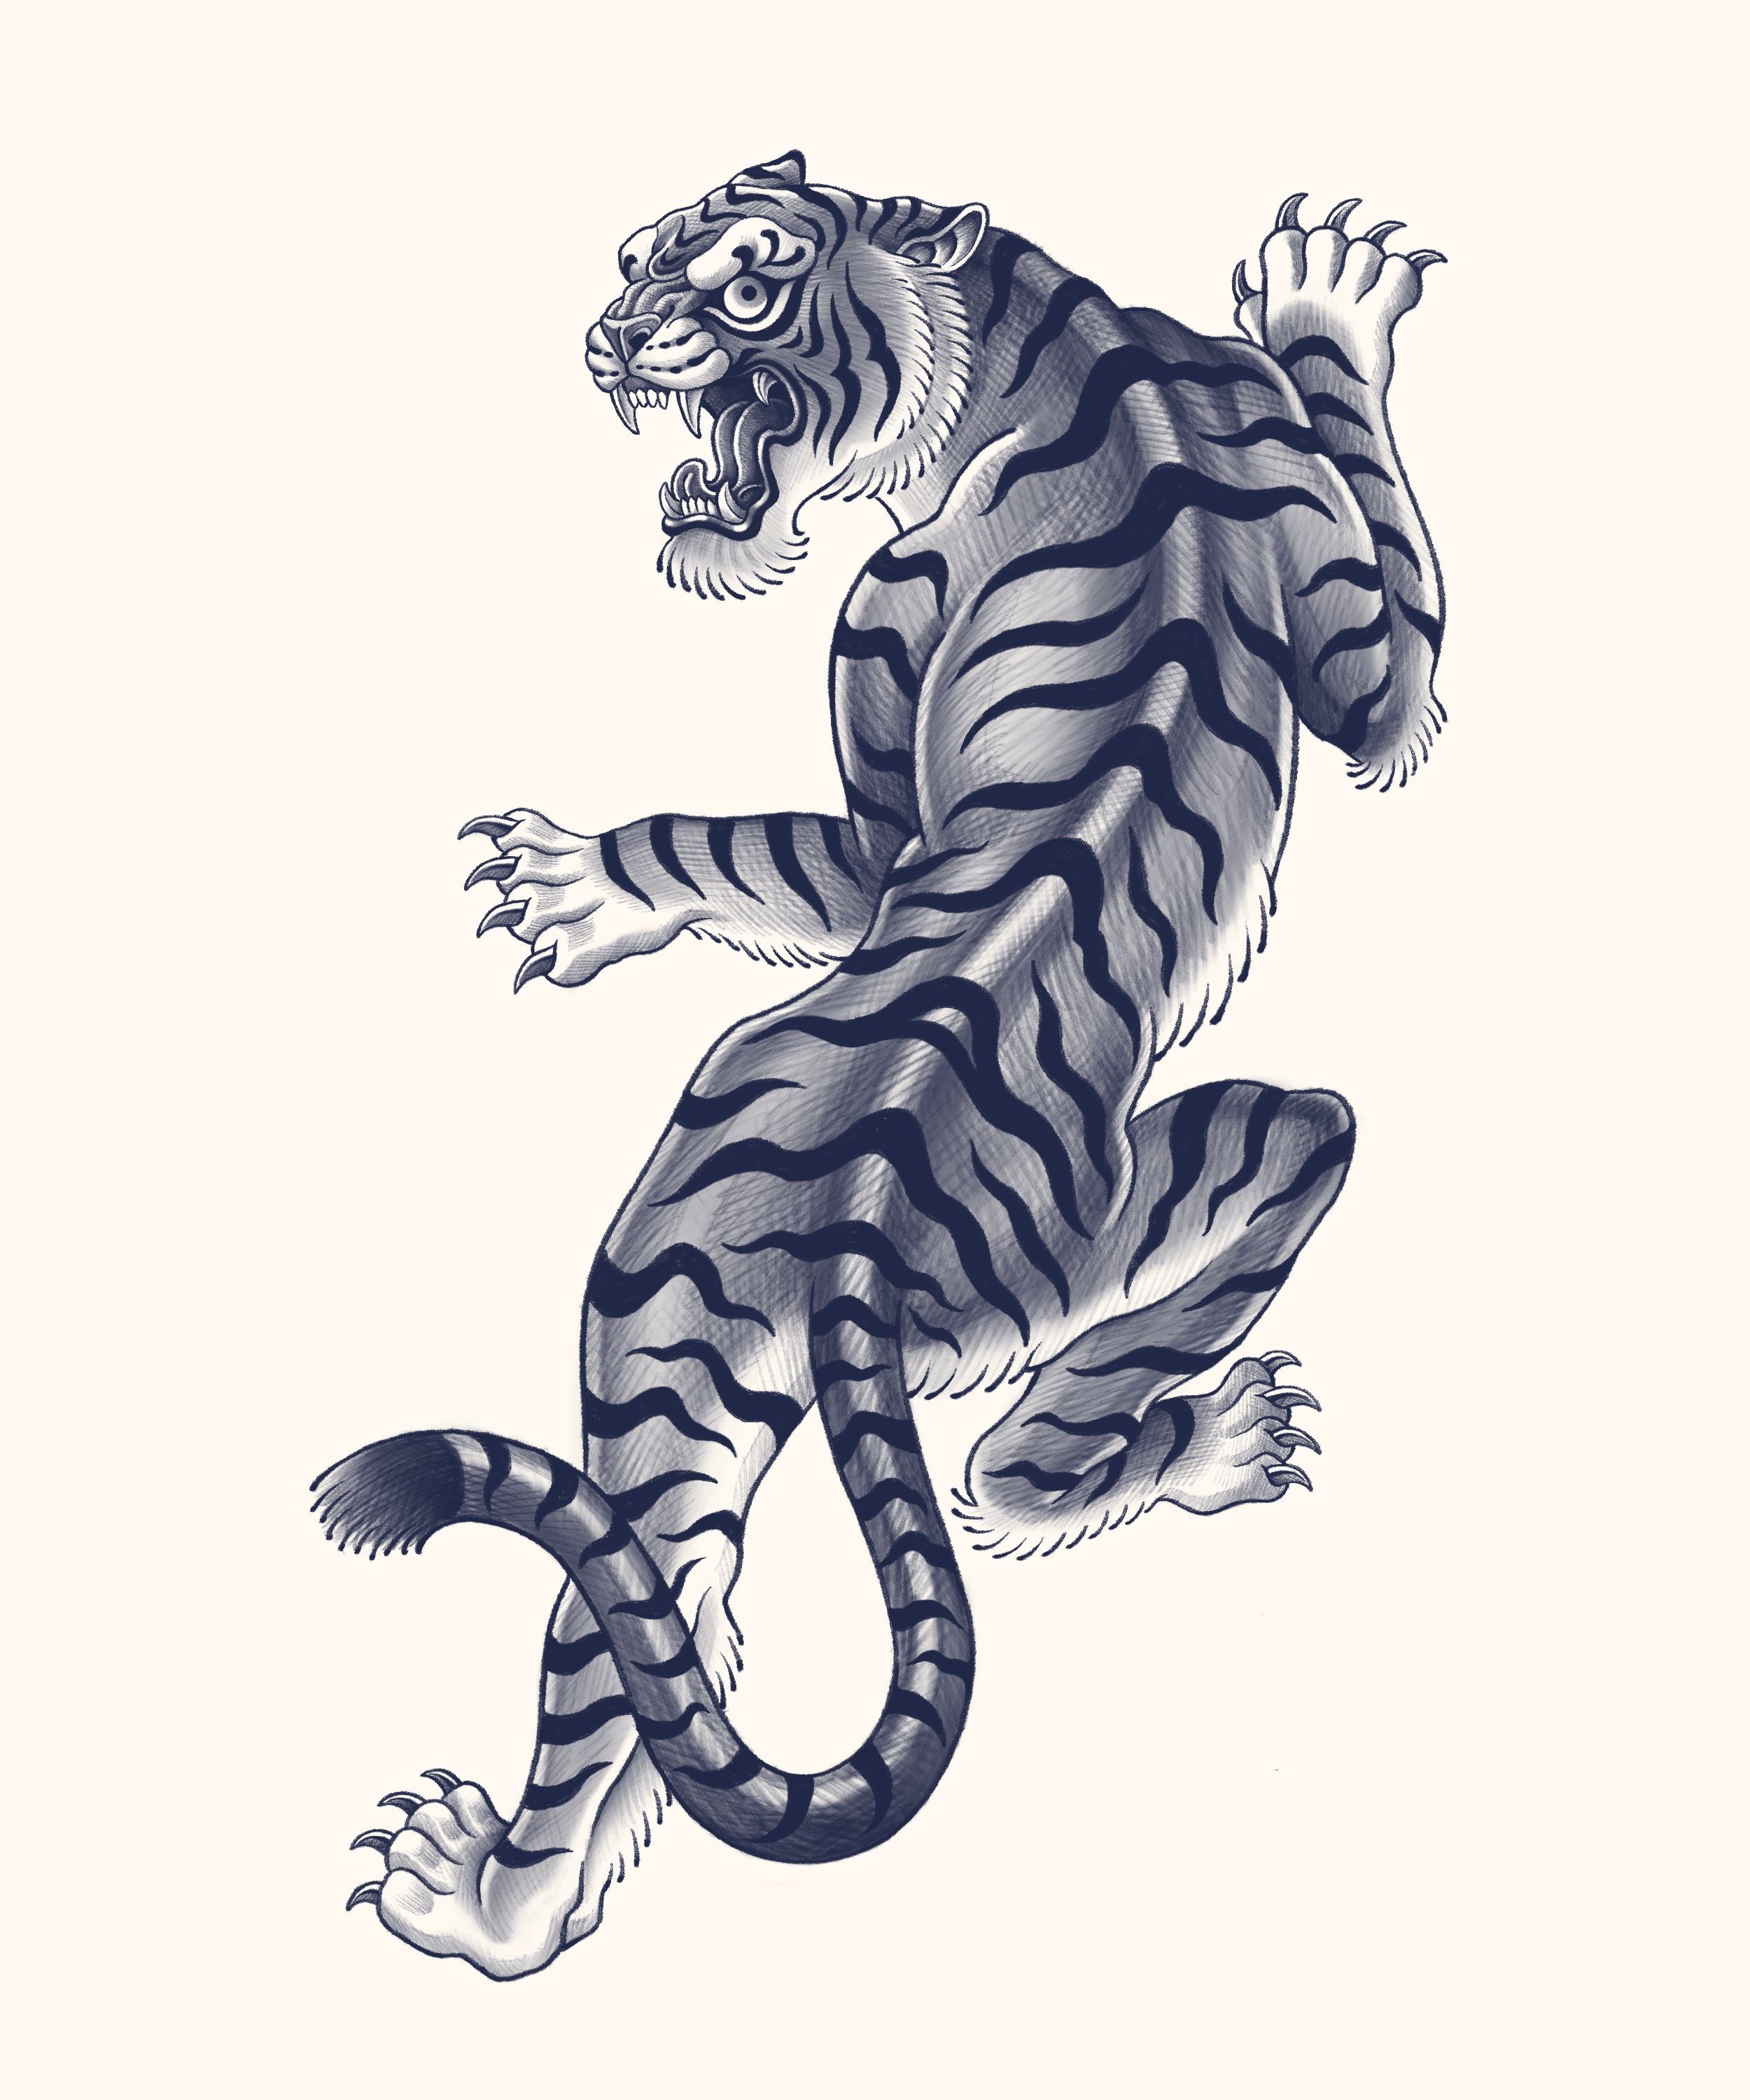 Minimalistic tiger tattoo | cute sleeping tiger tattoo | Tattoo designs  wrist, Tiger tattoo design, Tiger tattoo